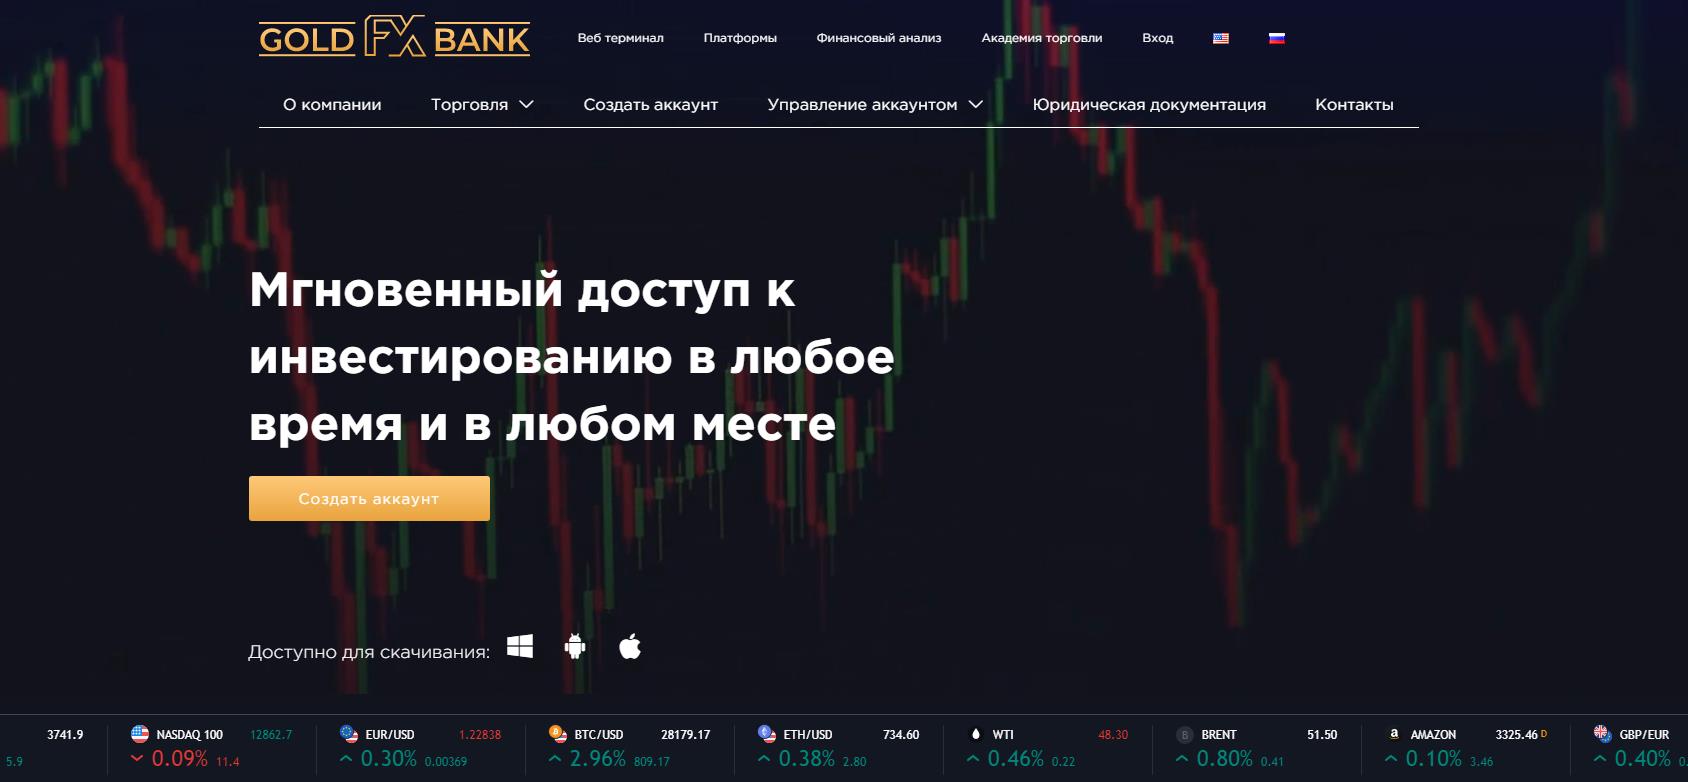 обзор официального сайта goldfxbank